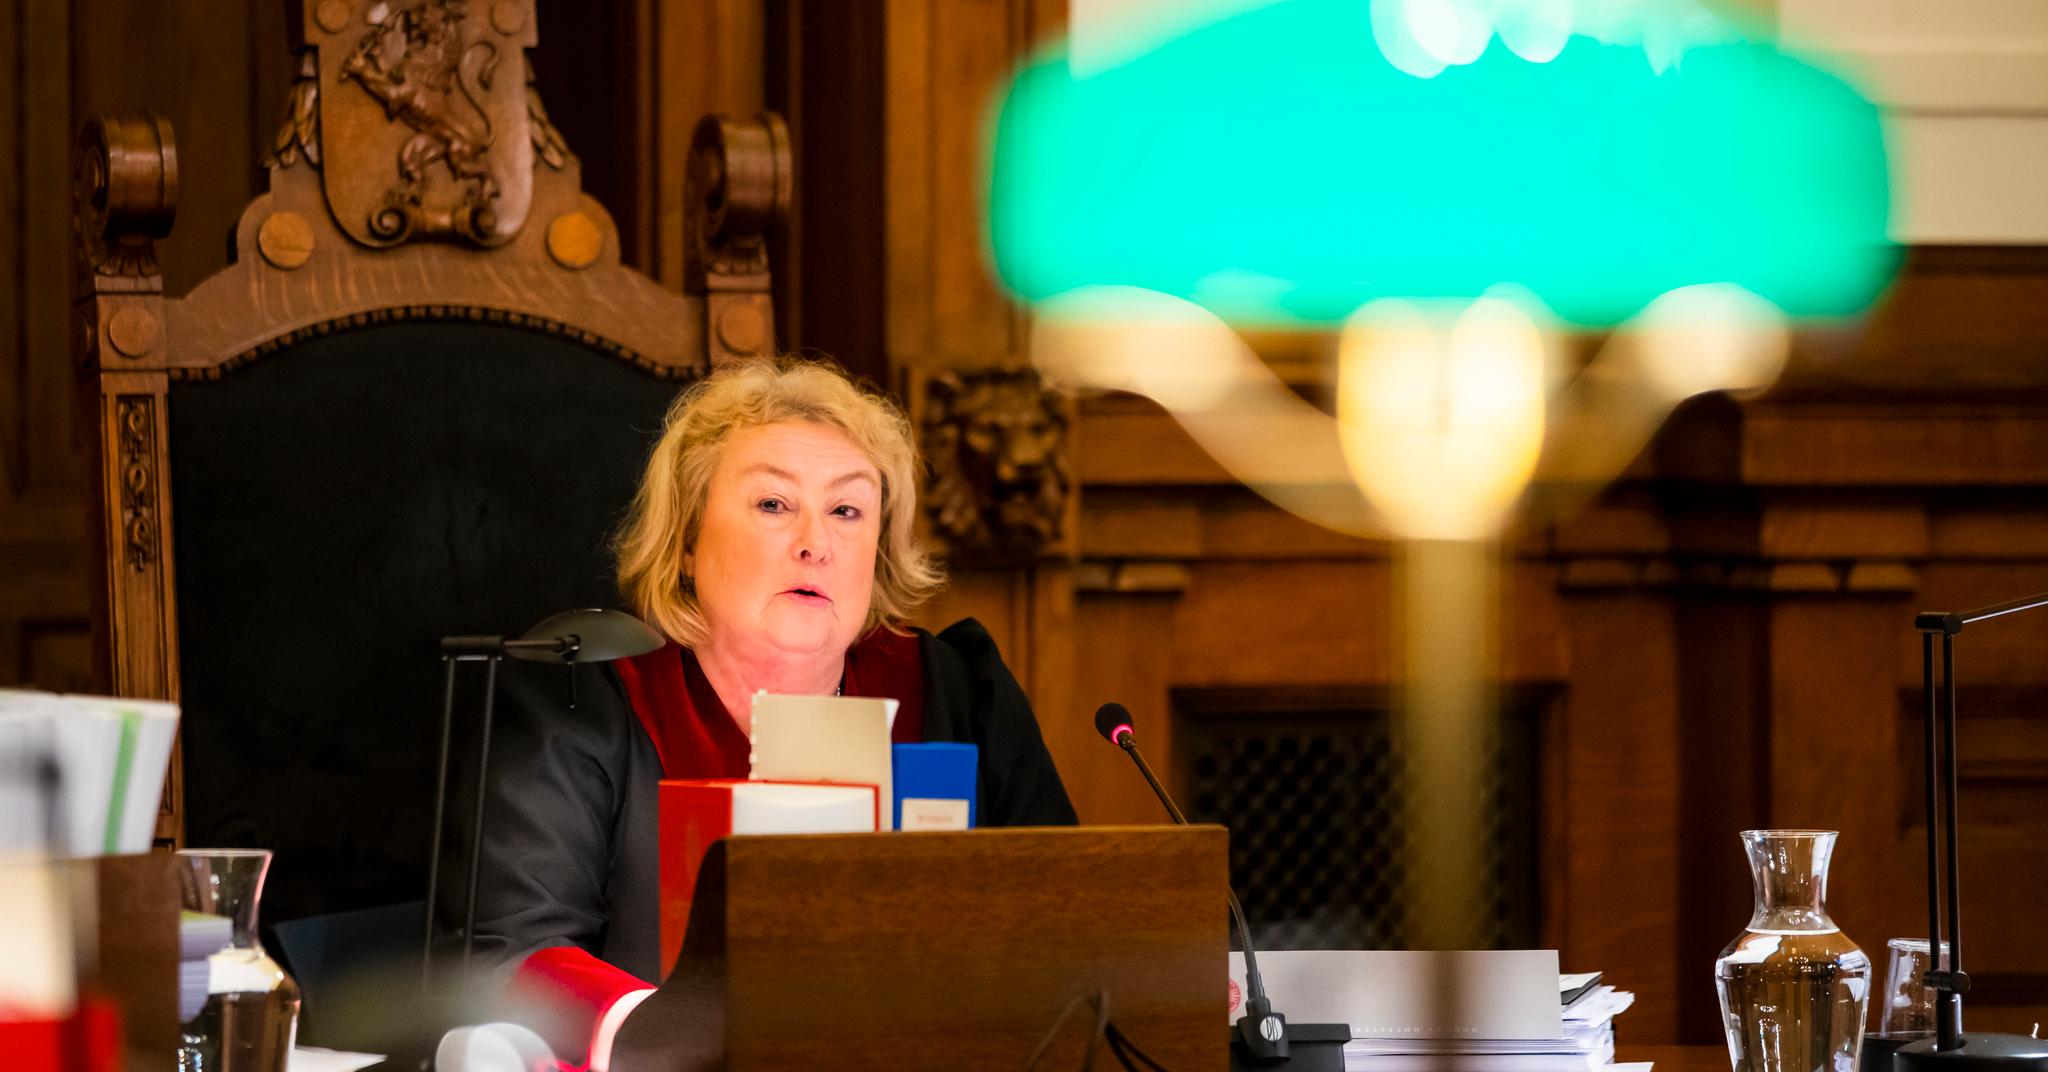 Advokatenes aksjon de siste ukene har skapt problemer for justitiarius Toril Marie Øie og Høyesterett. Hun sier det er for tidlig å si hva konsekvensene av aksjonen vil bli fremover. 